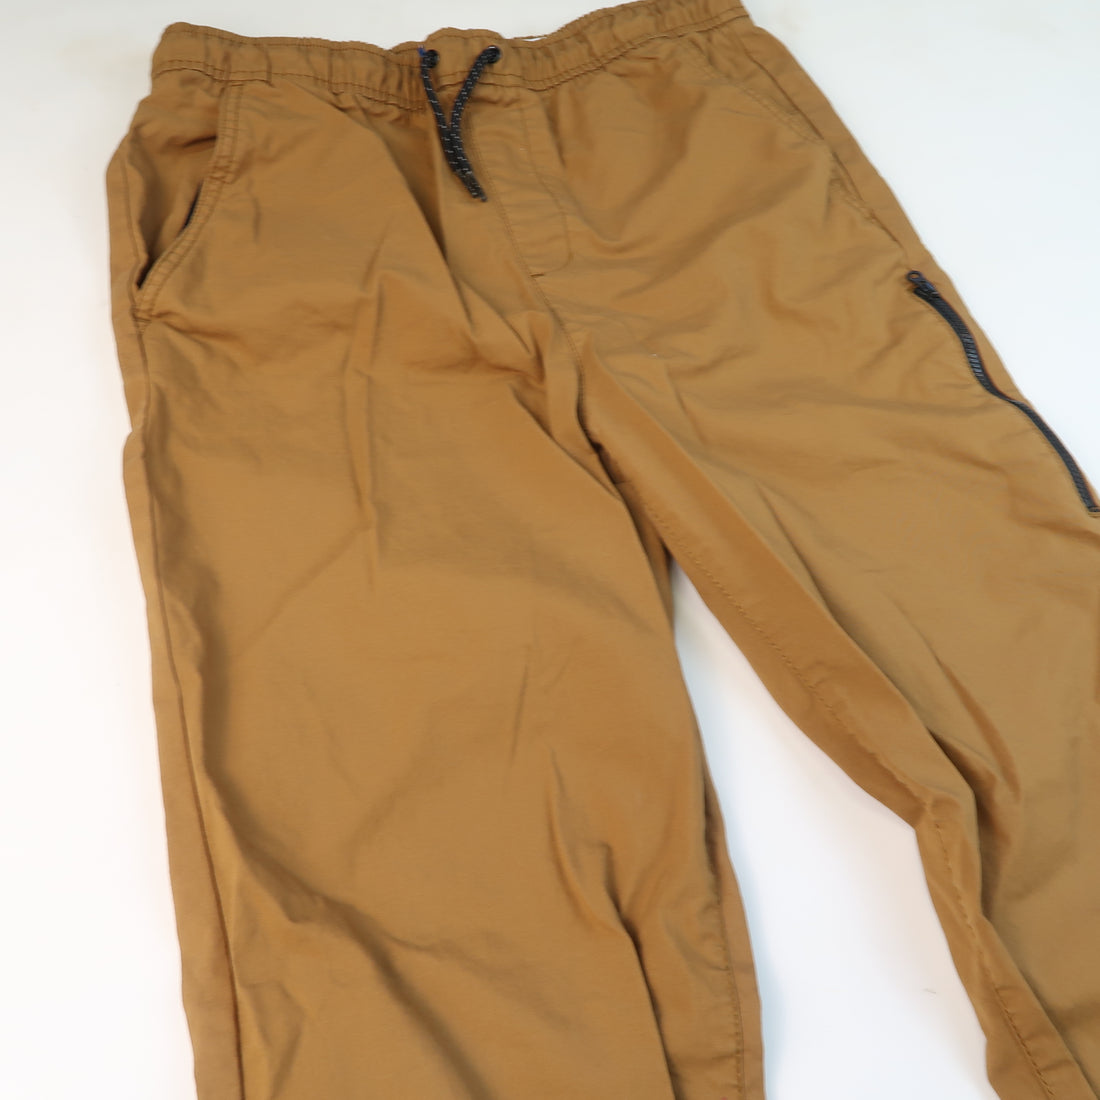 Old Navy - Pants (18Y)